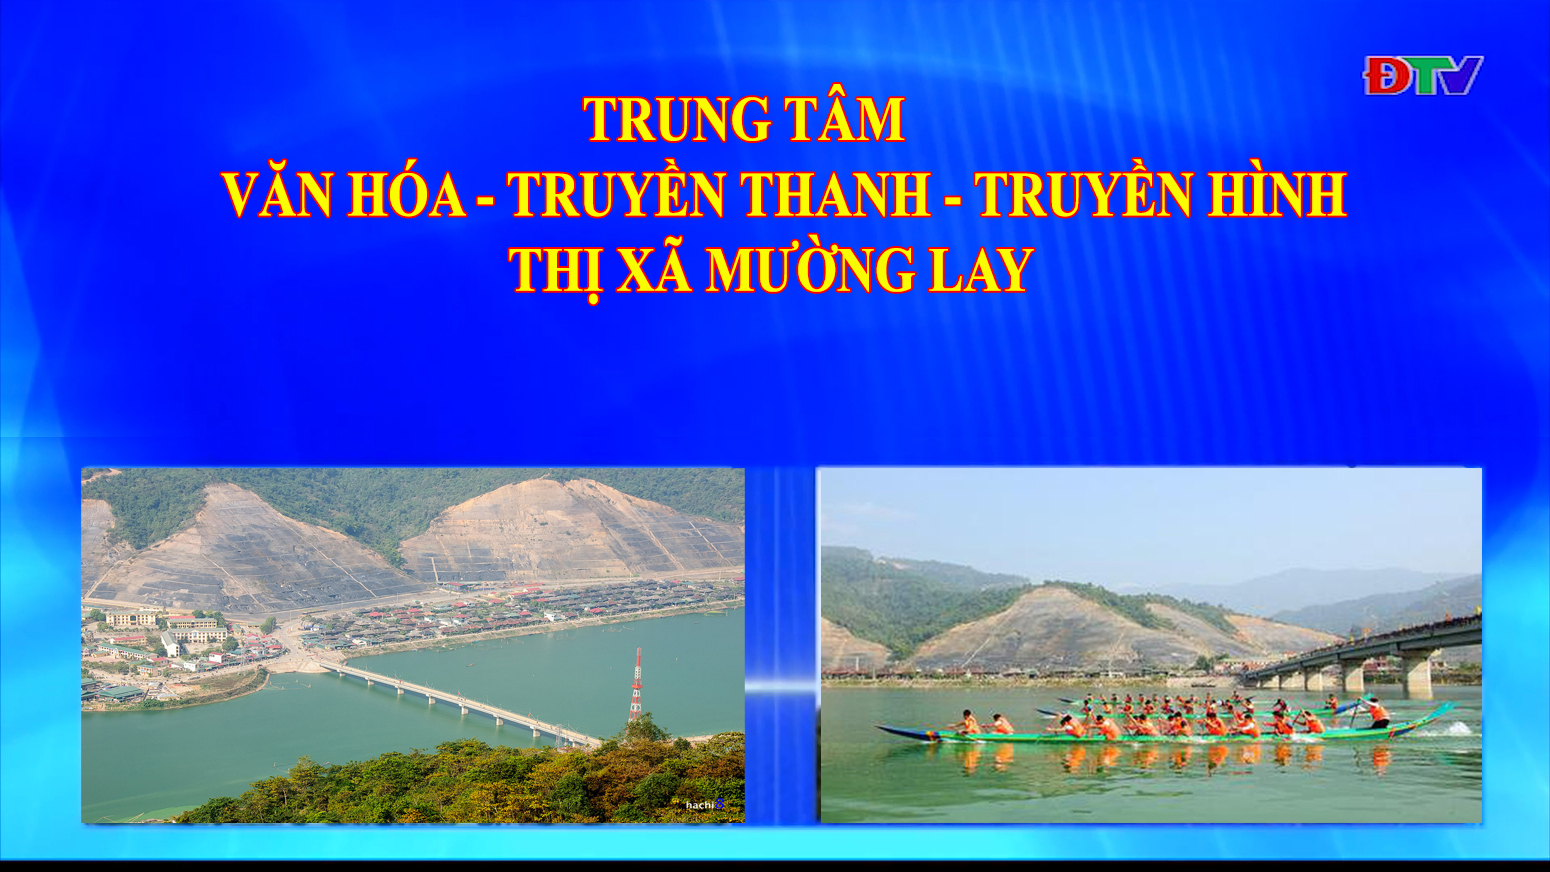 Trung tâm VH-TTTH thị xã Mường Lay (Ngày 29-4-2022)